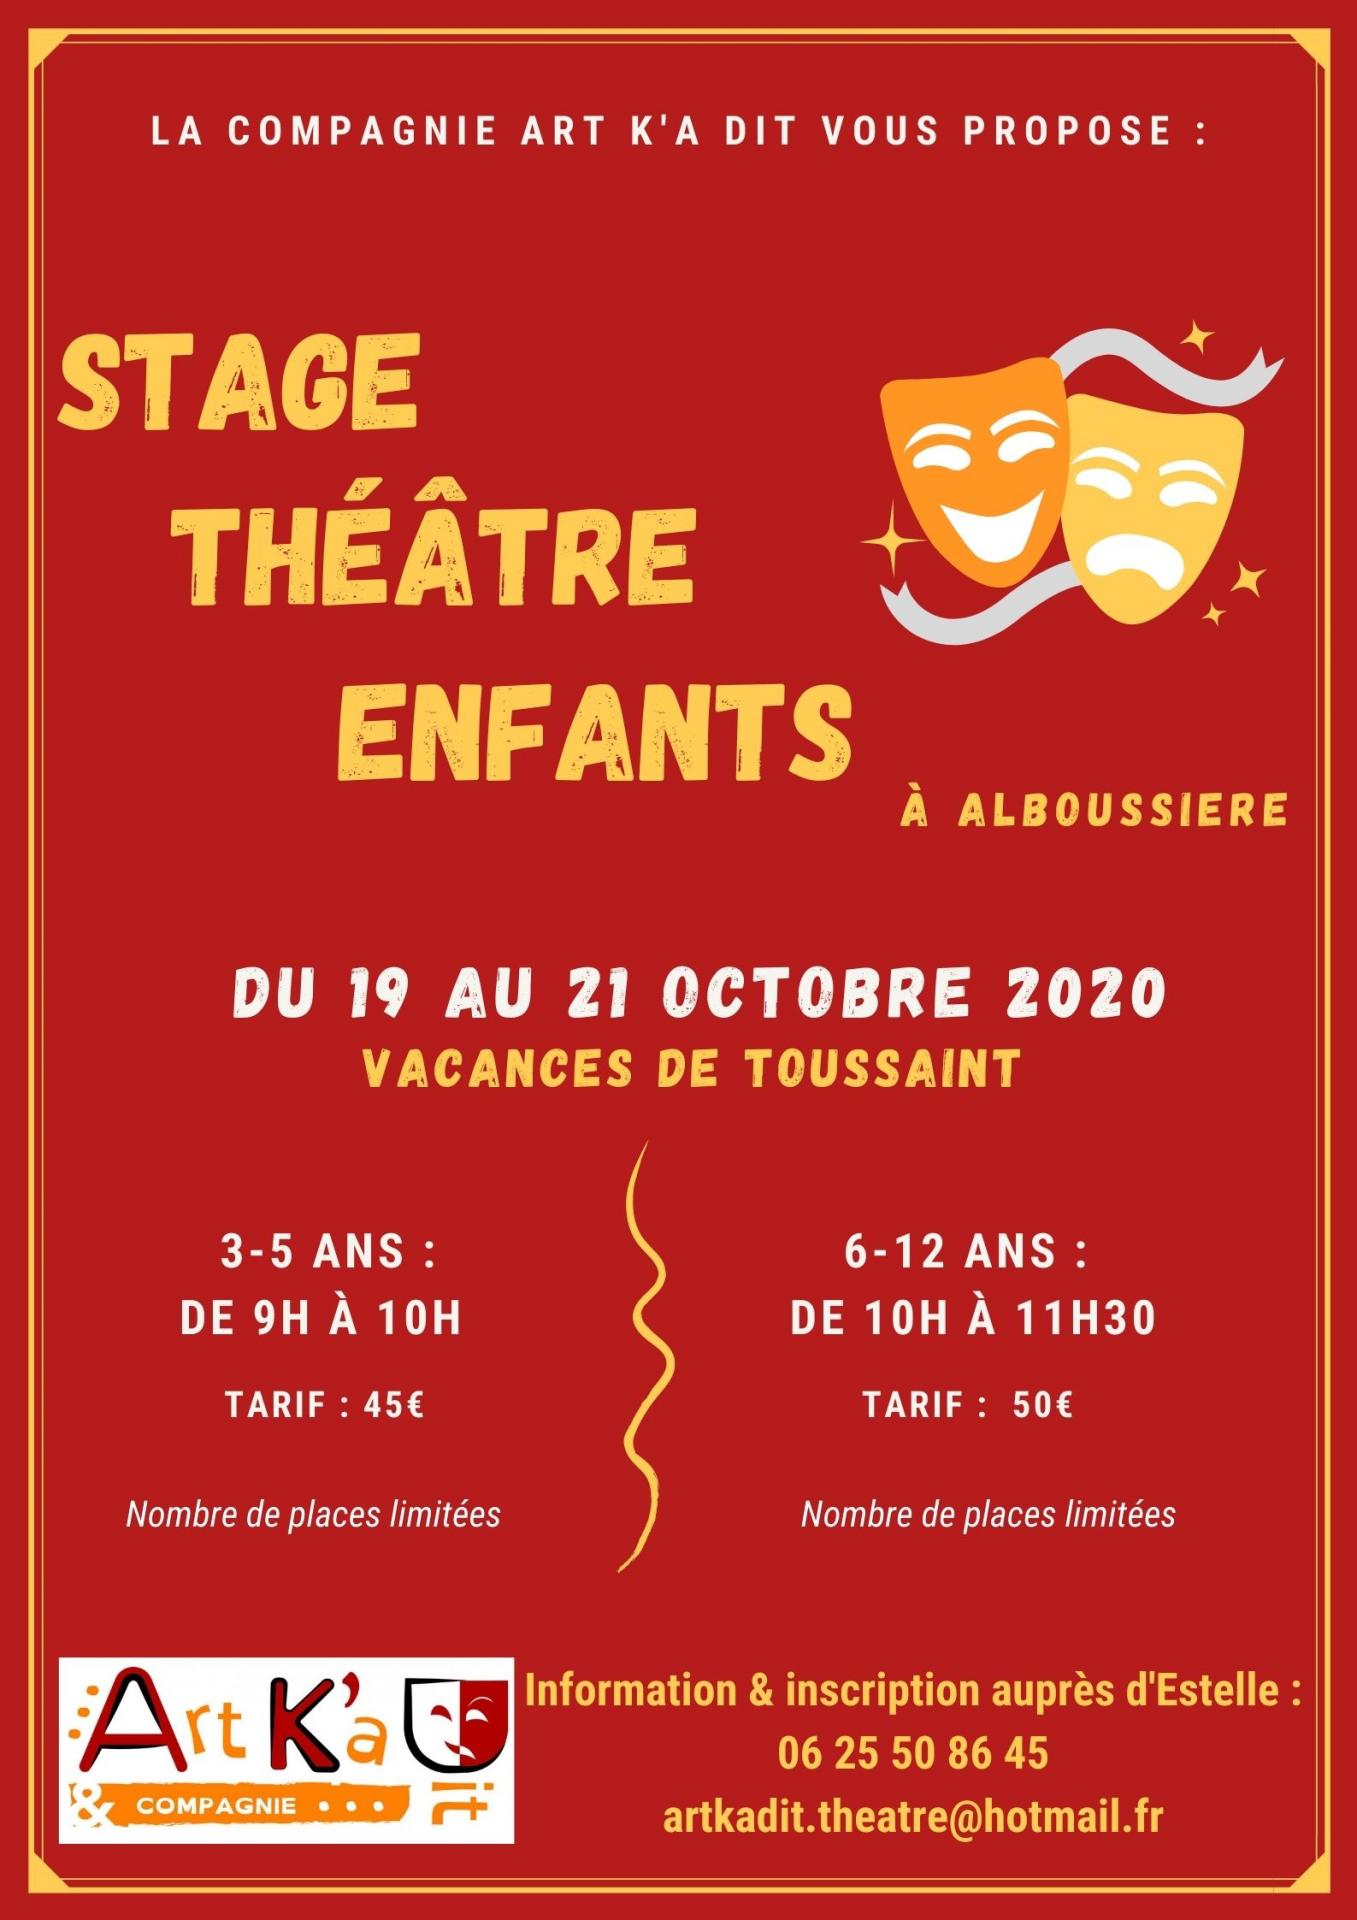 Stages theatre vacances toussaint 2020